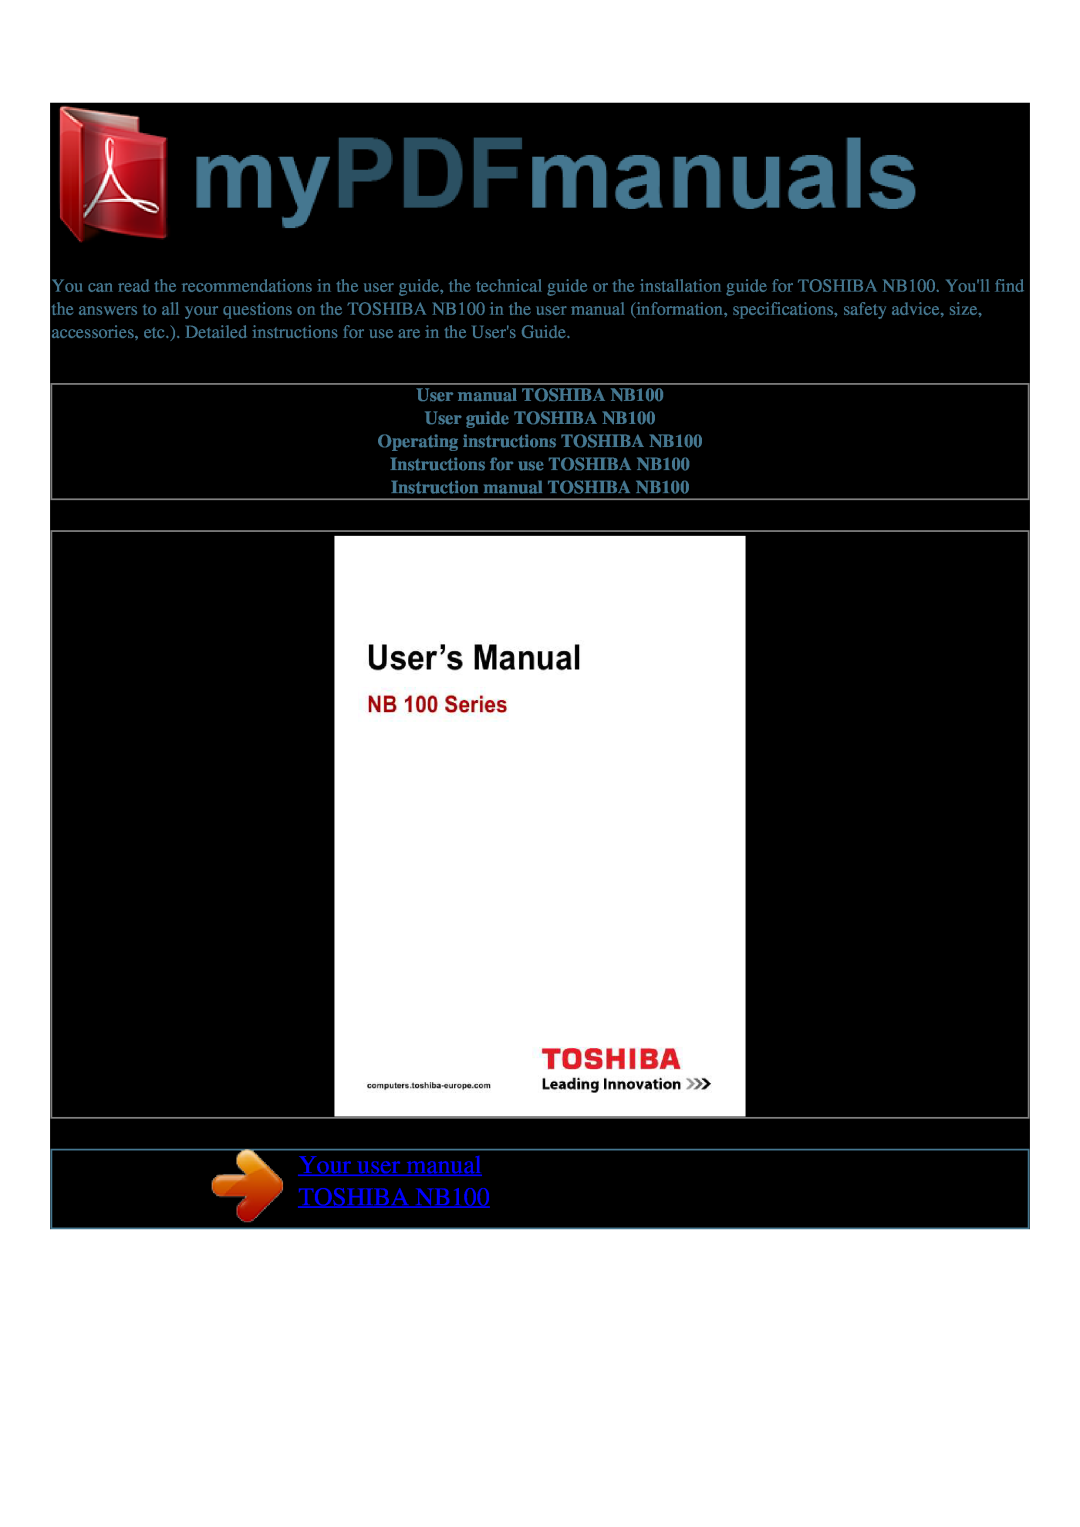 Toshiba user manual Your user manual TOSHIBA NB100, User manual TOSHIBA NB100 User guide TOSHIBA NB100 